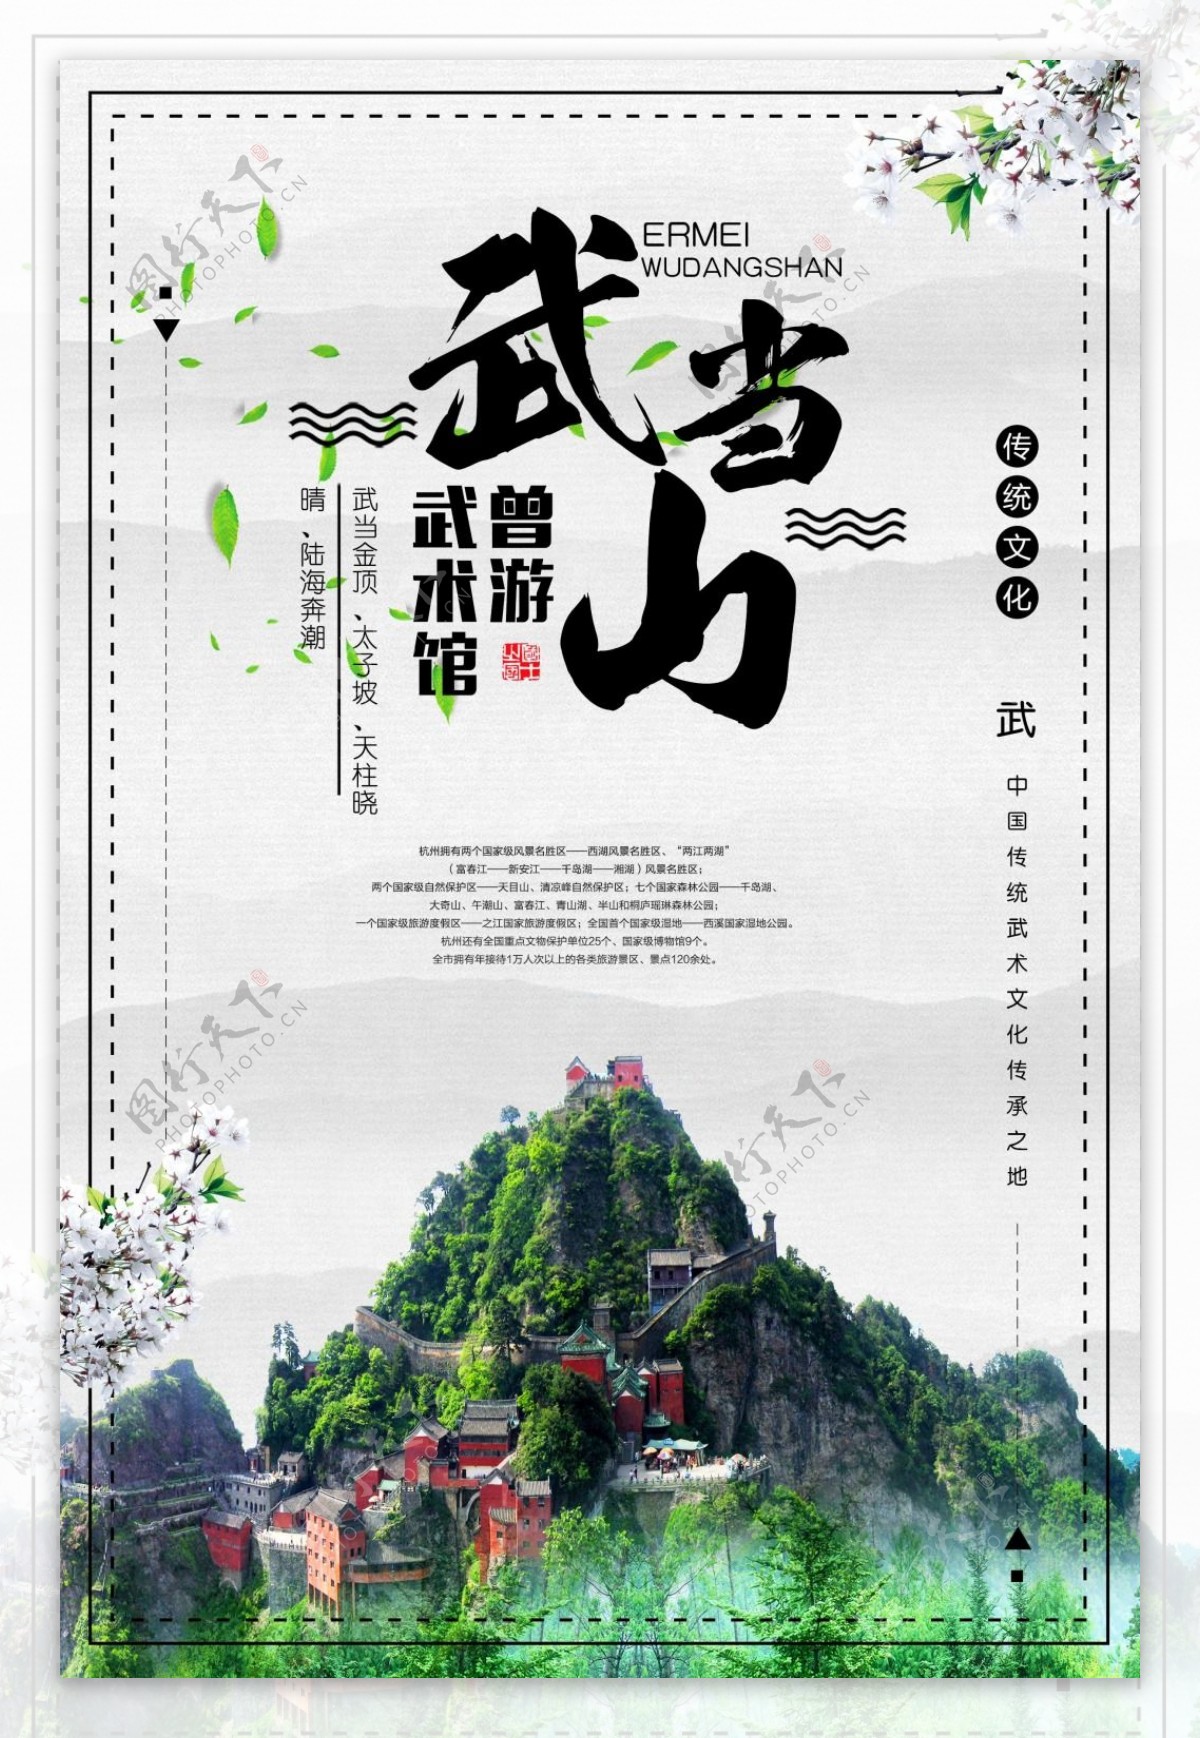 简约大气中国风武当山旅游海报